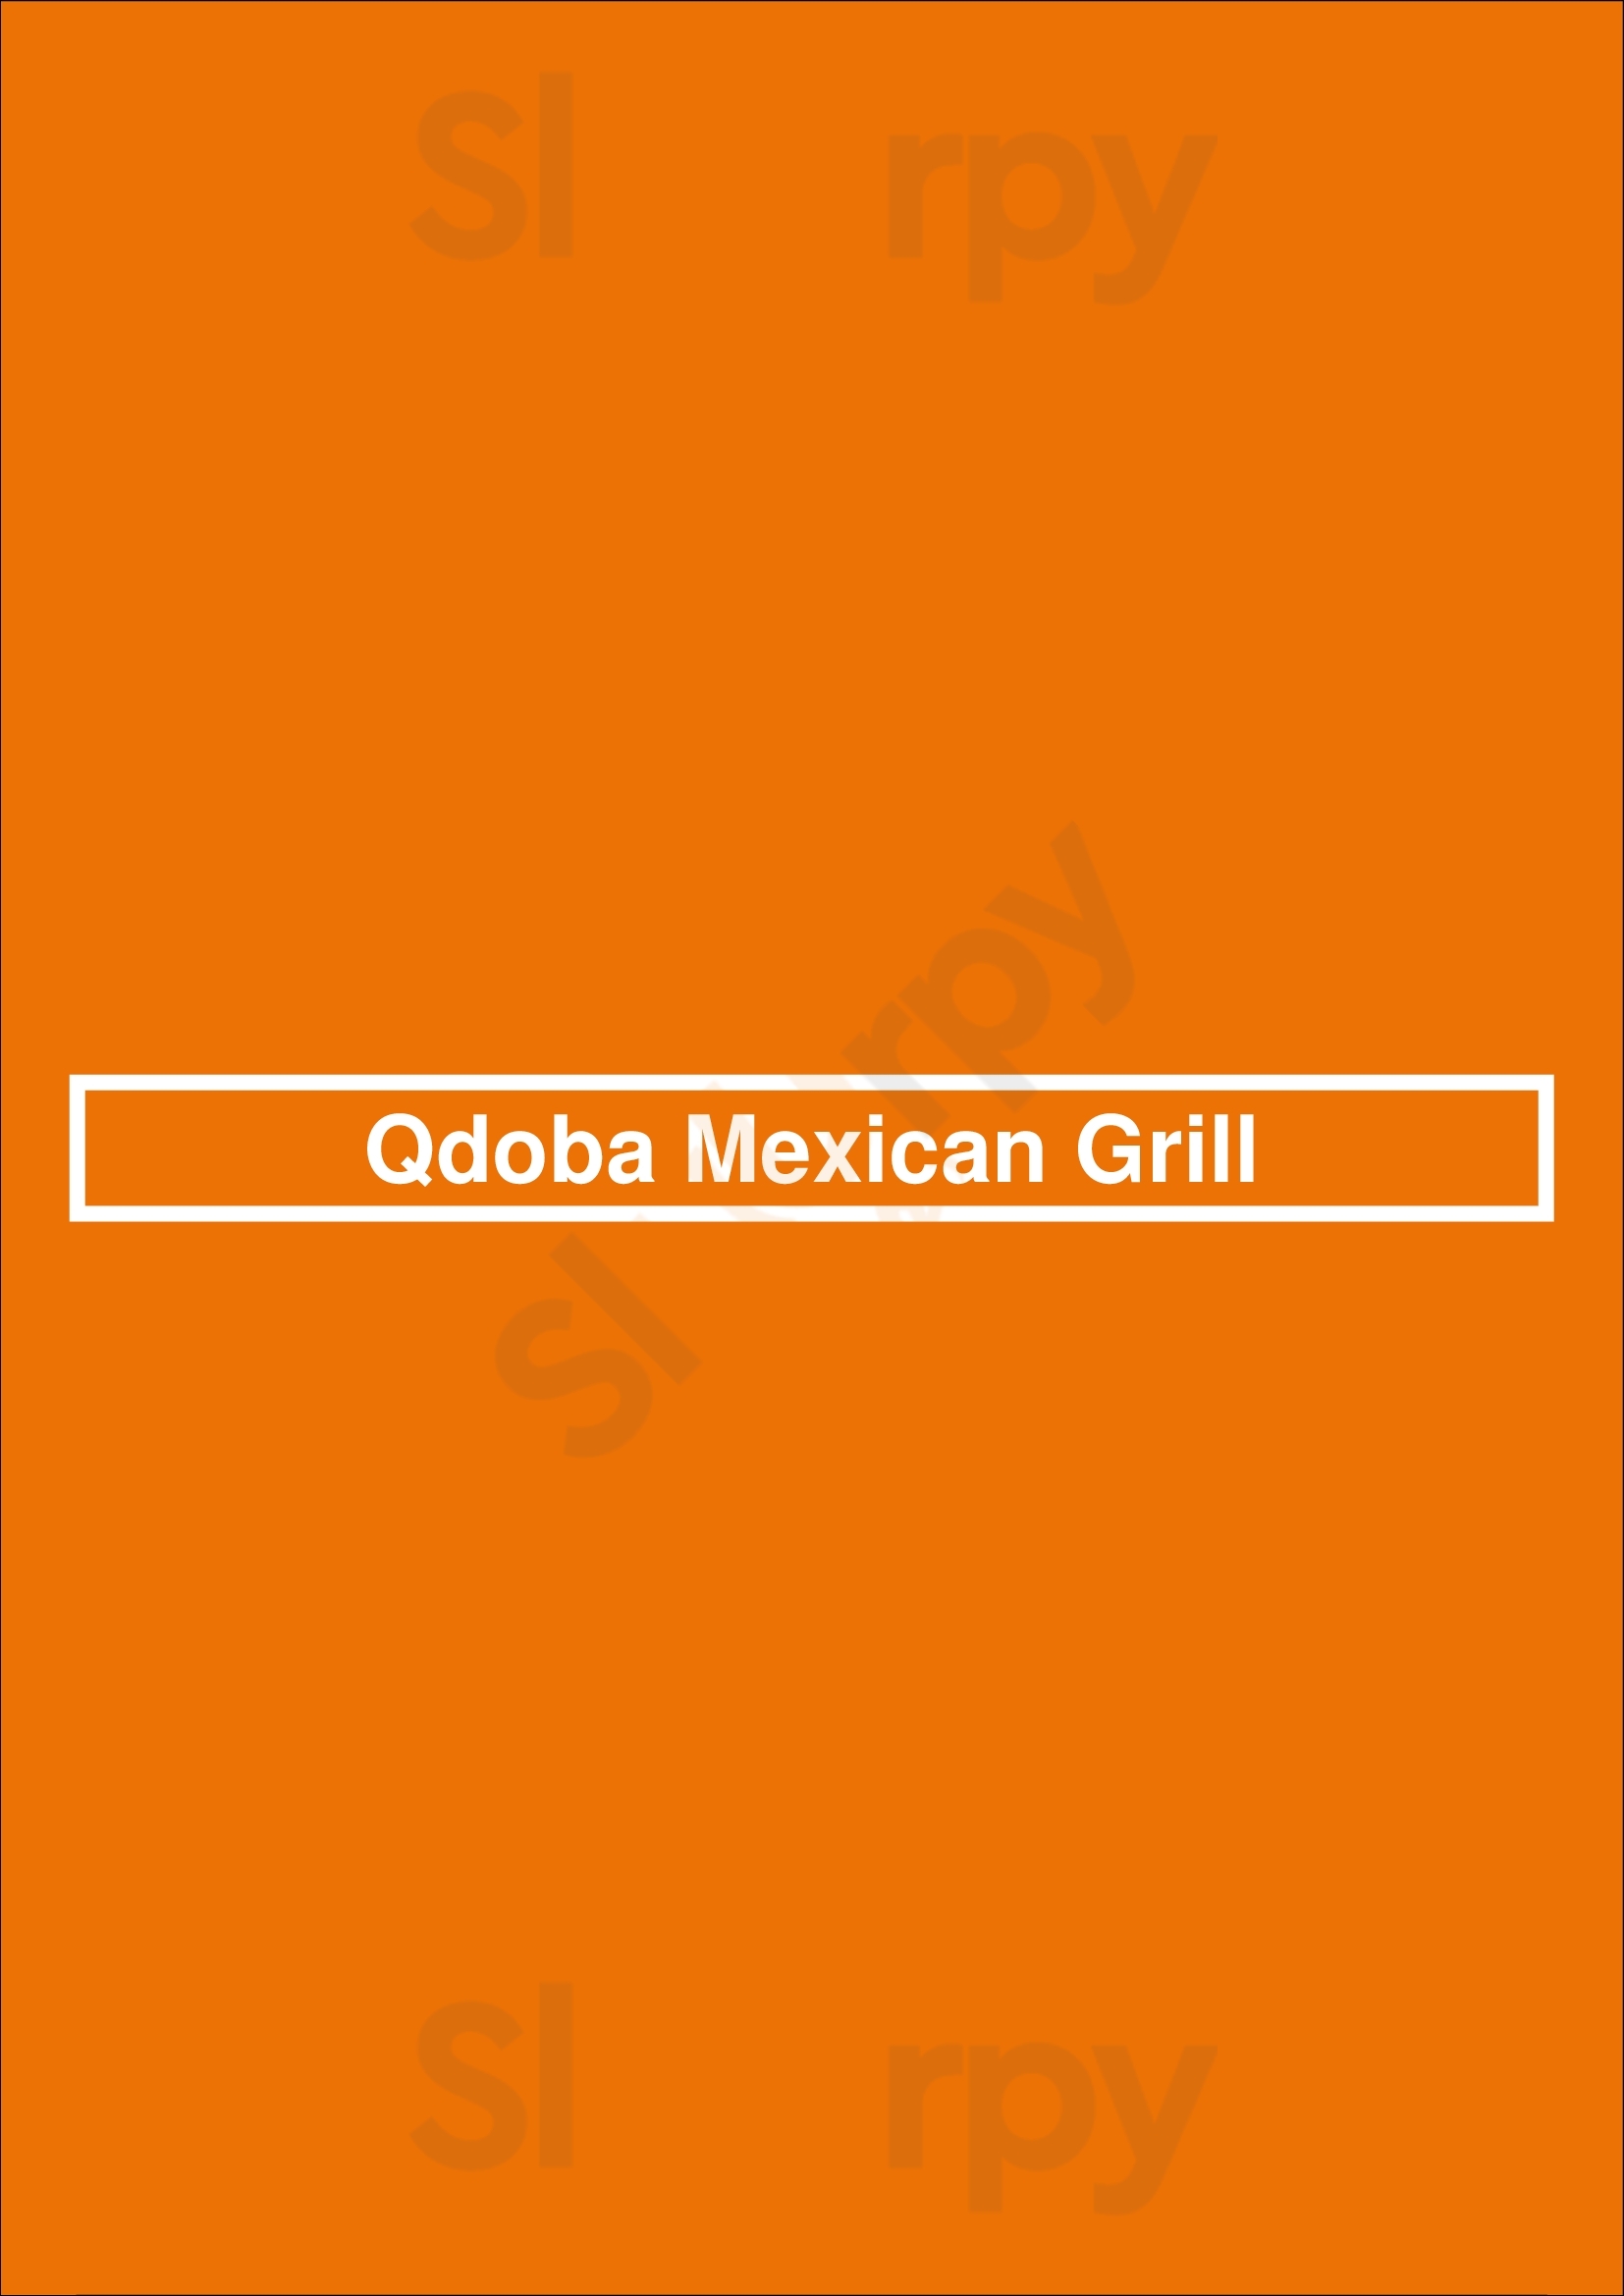 Qdoba Mexican Grill Woodbridge Menu - 1